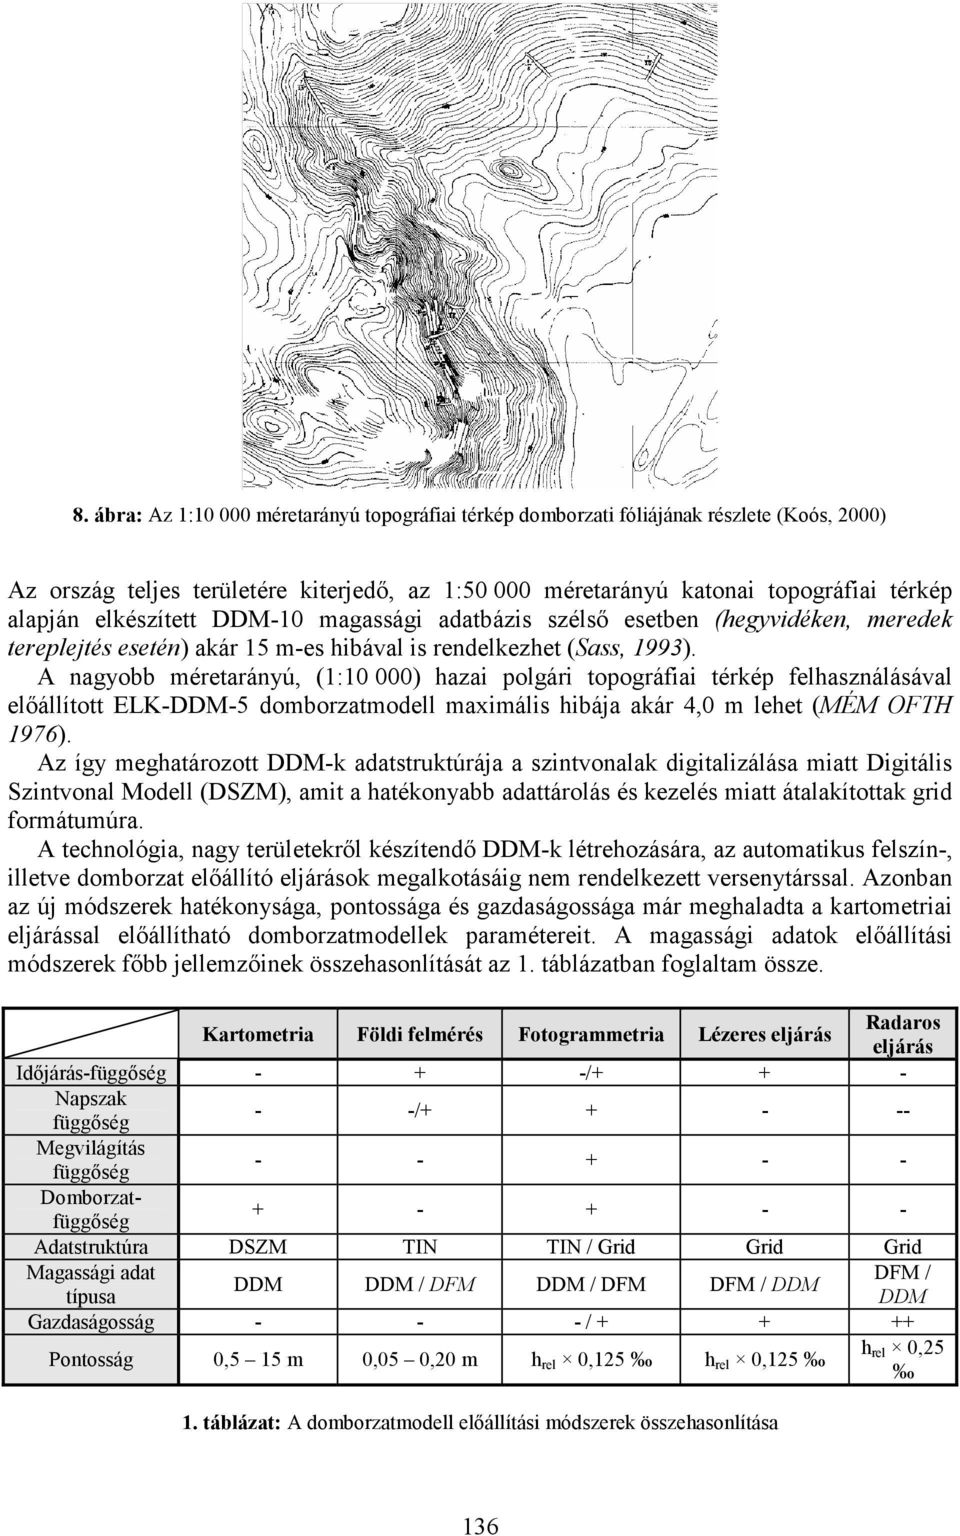 A nagyobb méretarányú, (1:10 000) hazai polgári topográfiai térkép felhasználásával elıállított ELK-DDM-5 domborzatmodell maximális hibája akár 4,0 m lehet (MÉM OFTH 1976).